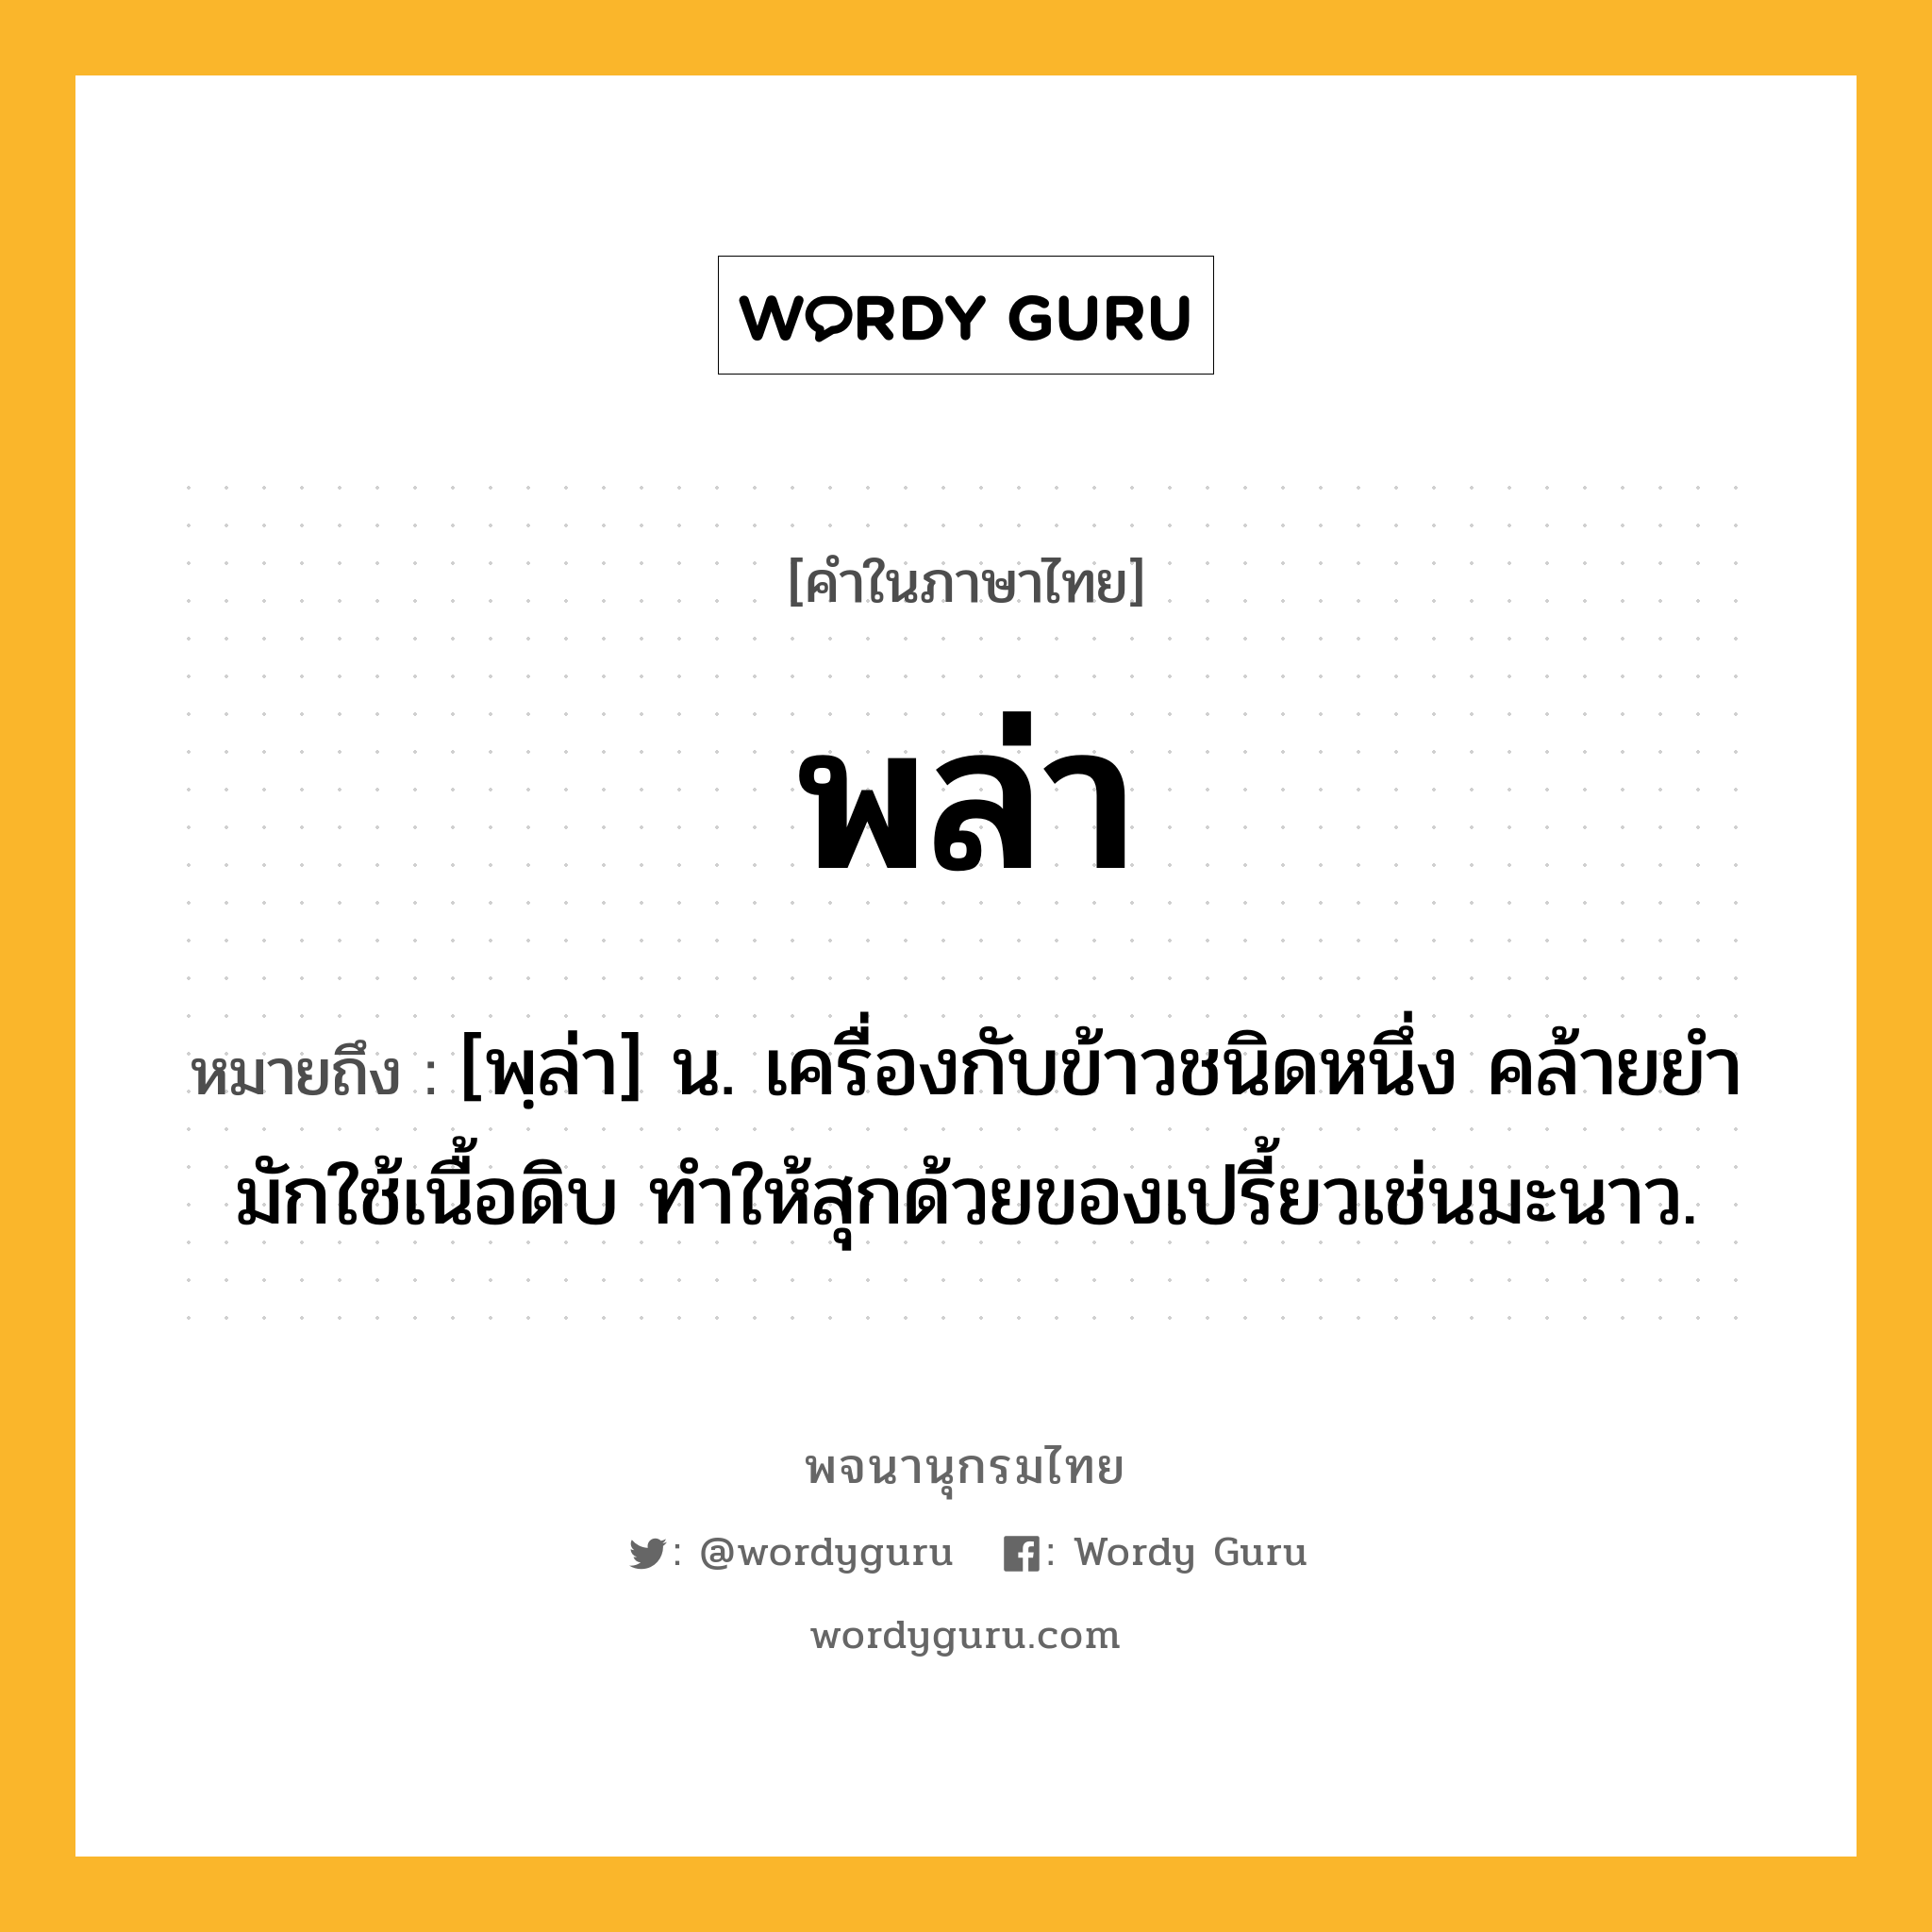 พล่า หมายถึงอะไร?, คำในภาษาไทย พล่า หมายถึง [พฺล่า] น. เครื่องกับข้าวชนิดหนึ่ง คล้ายยํา มักใช้เนื้อดิบ ทำให้สุกด้วยของเปรี้ยวเช่นมะนาว.